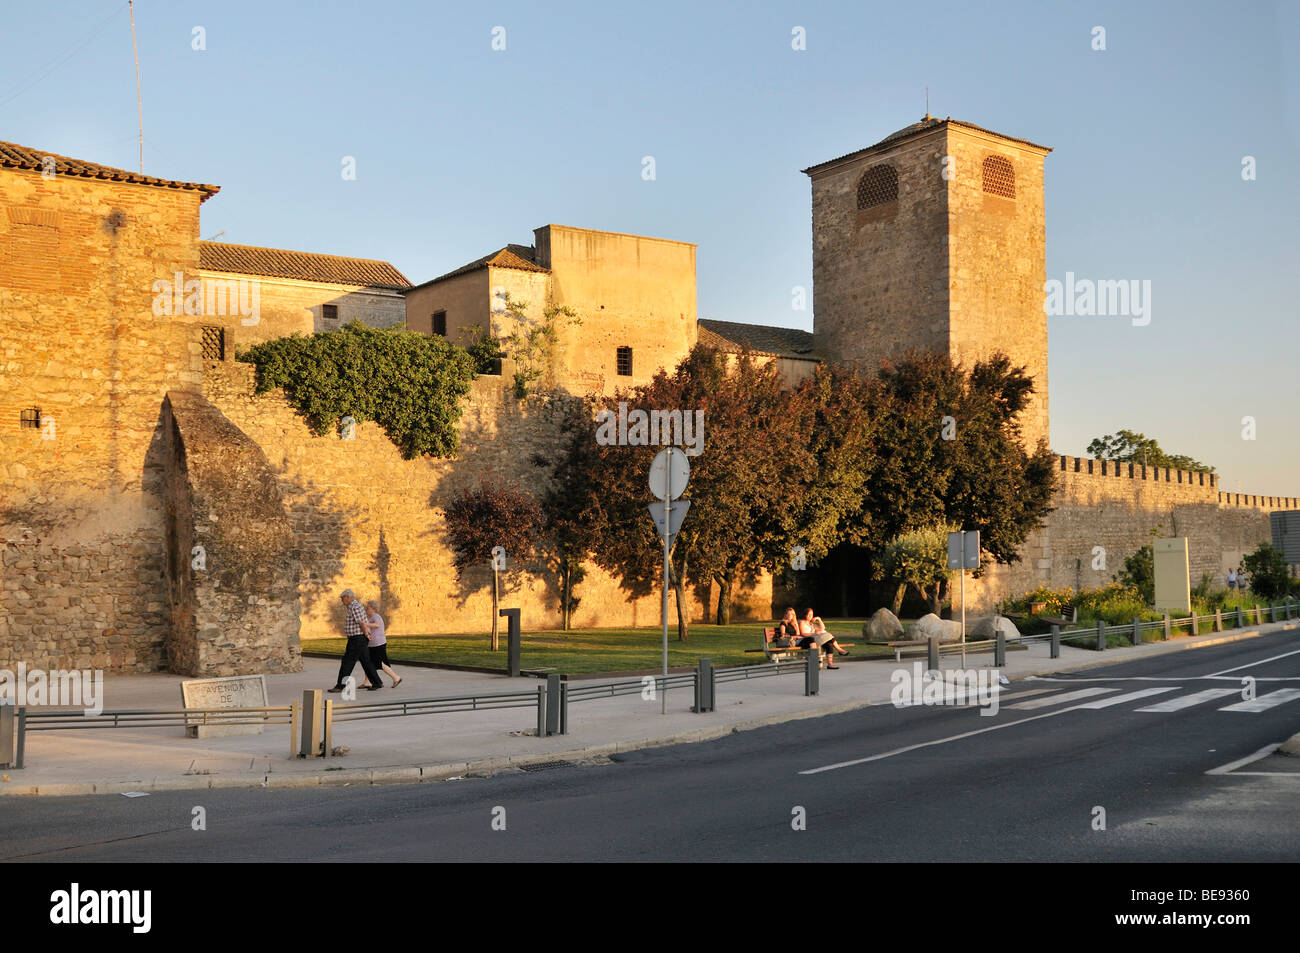 Une partie de la ville médiévale avec tour de guet, Evora, UNESCO World Heritage Site, Alentejo, Portugal, Europe Banque D'Images